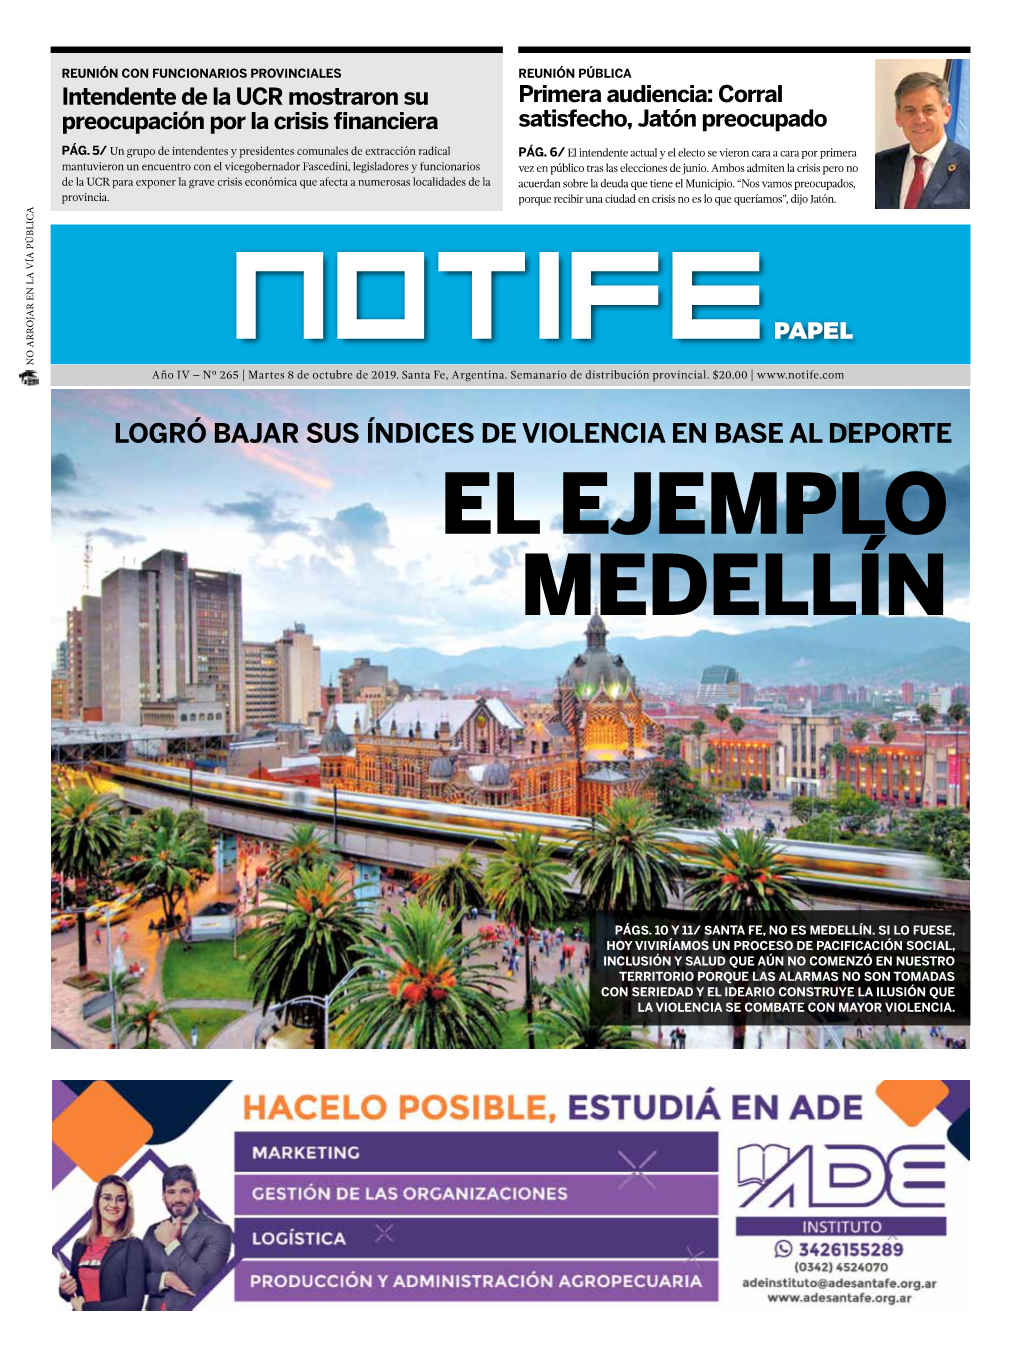 El Ejemplo Medellín